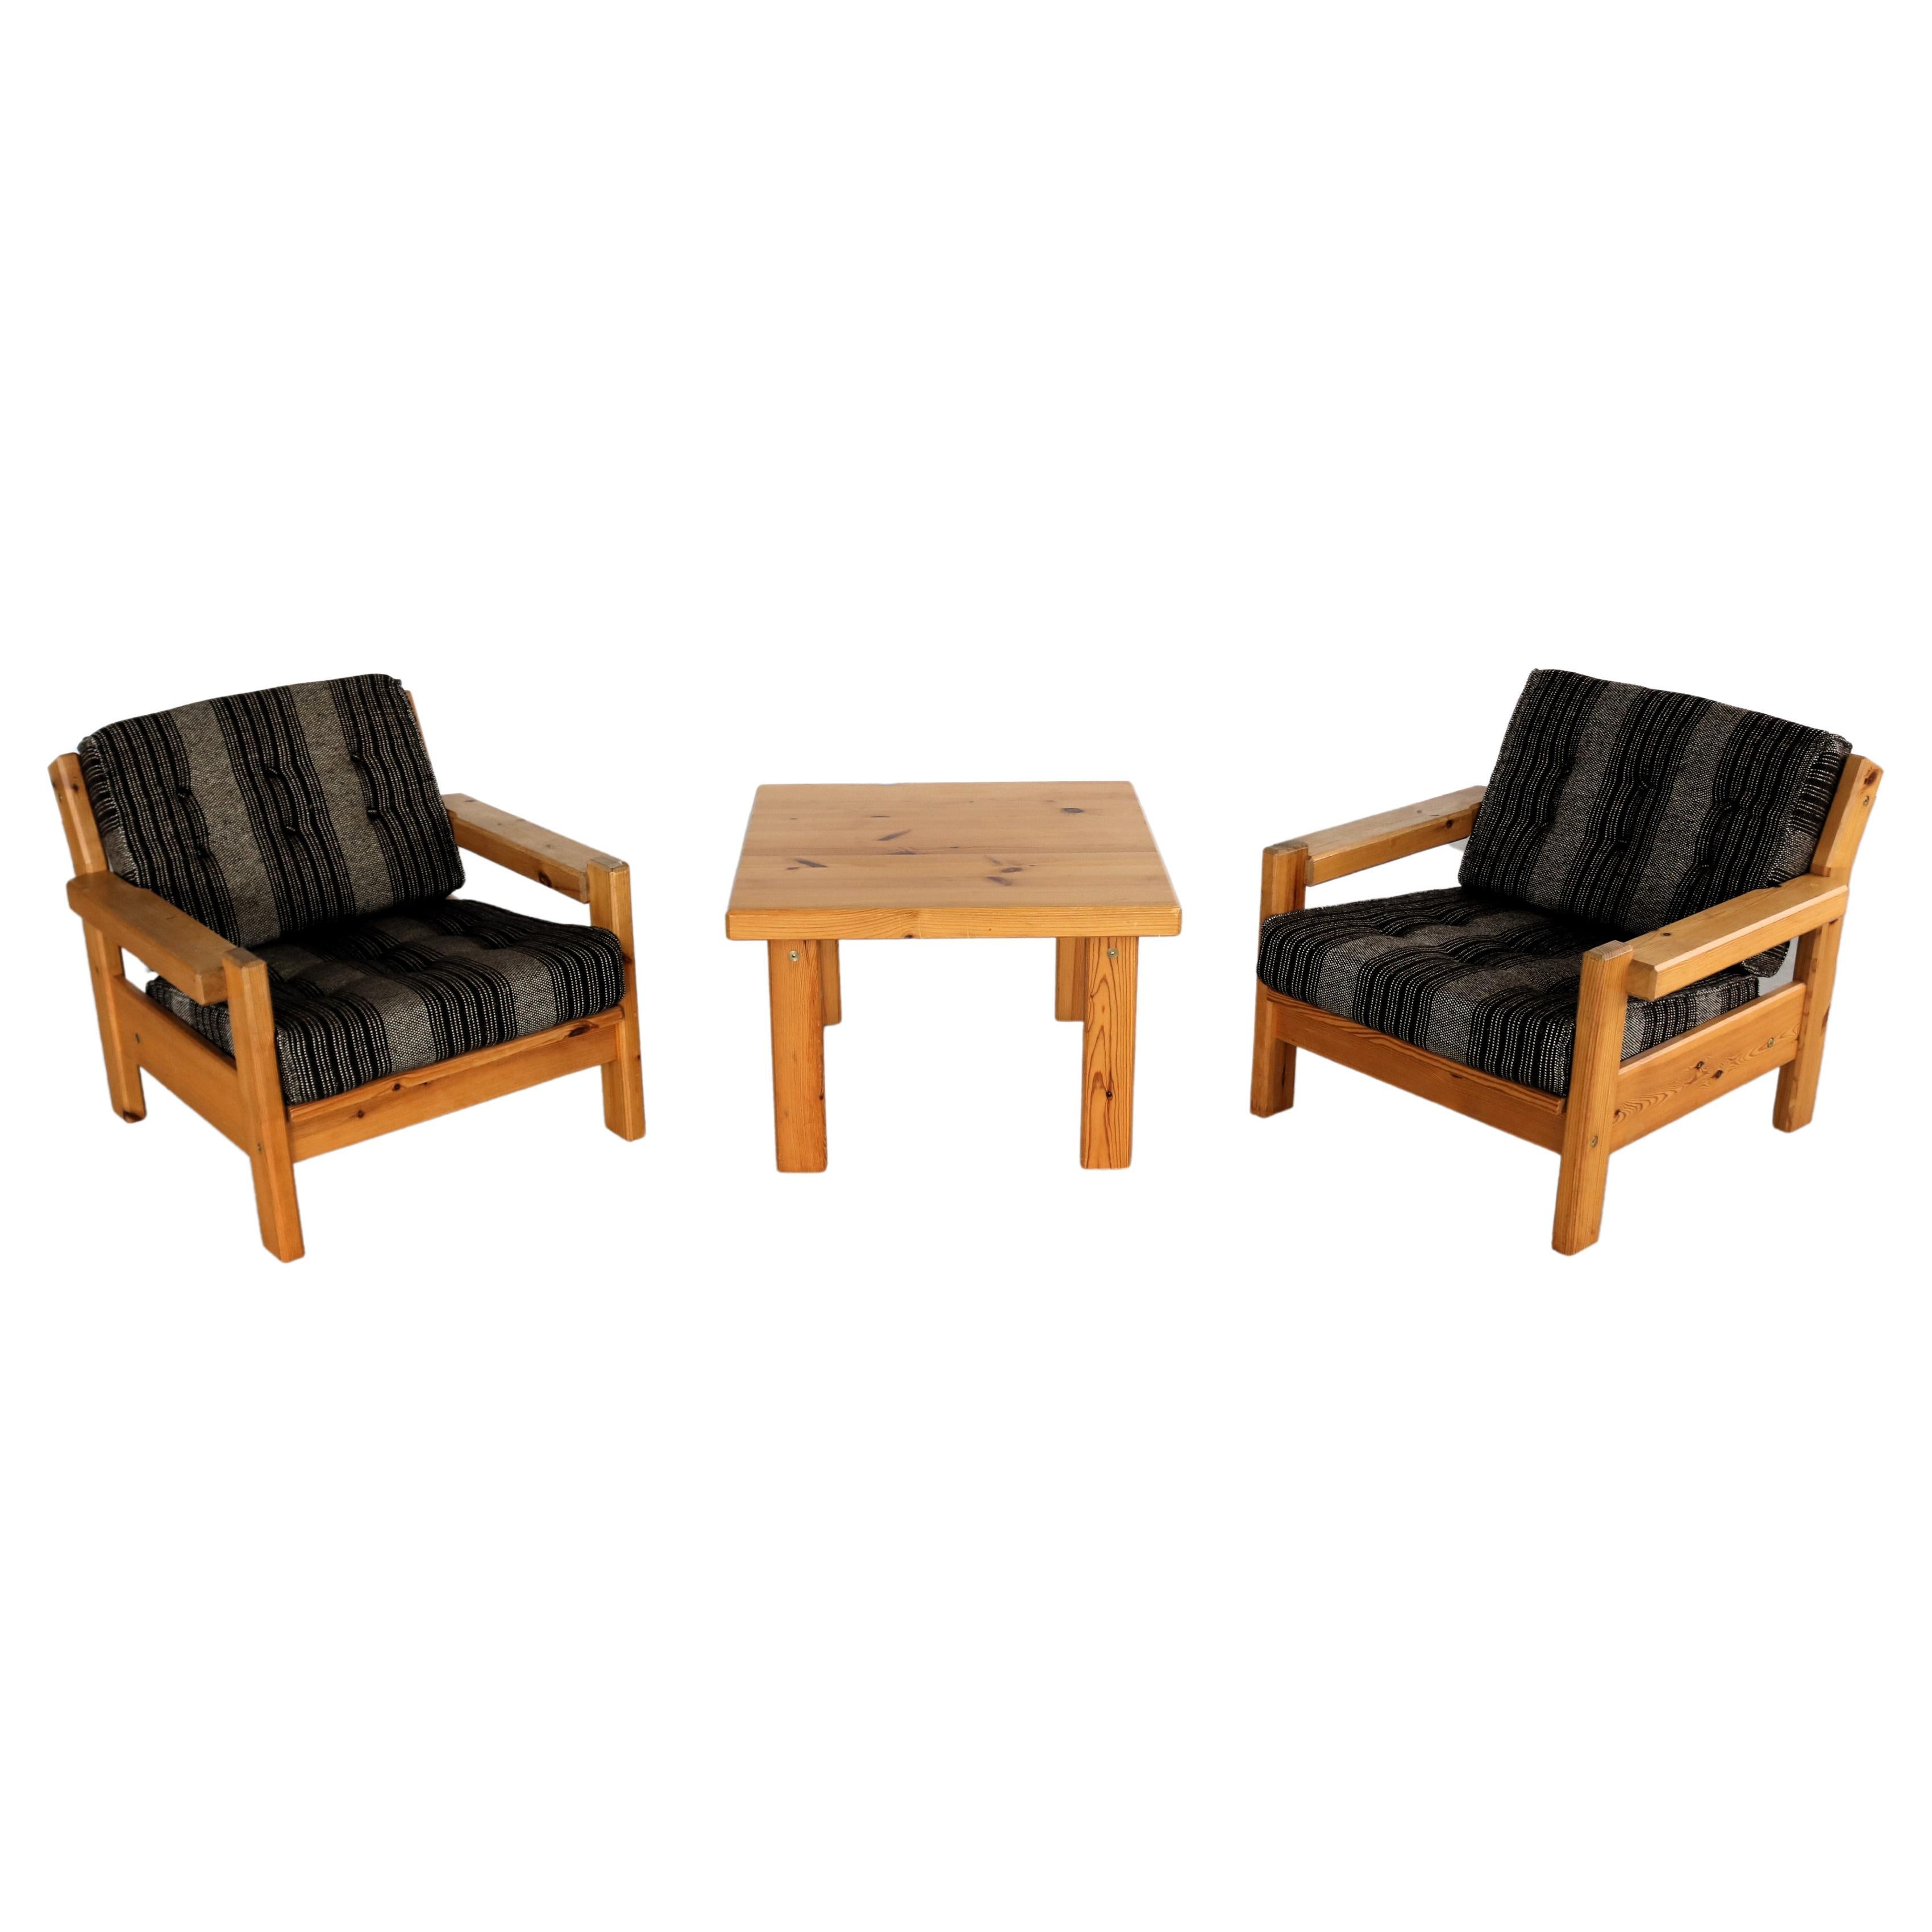  groupe de sièges vintage  fauteuils  table basse  70's  Suède